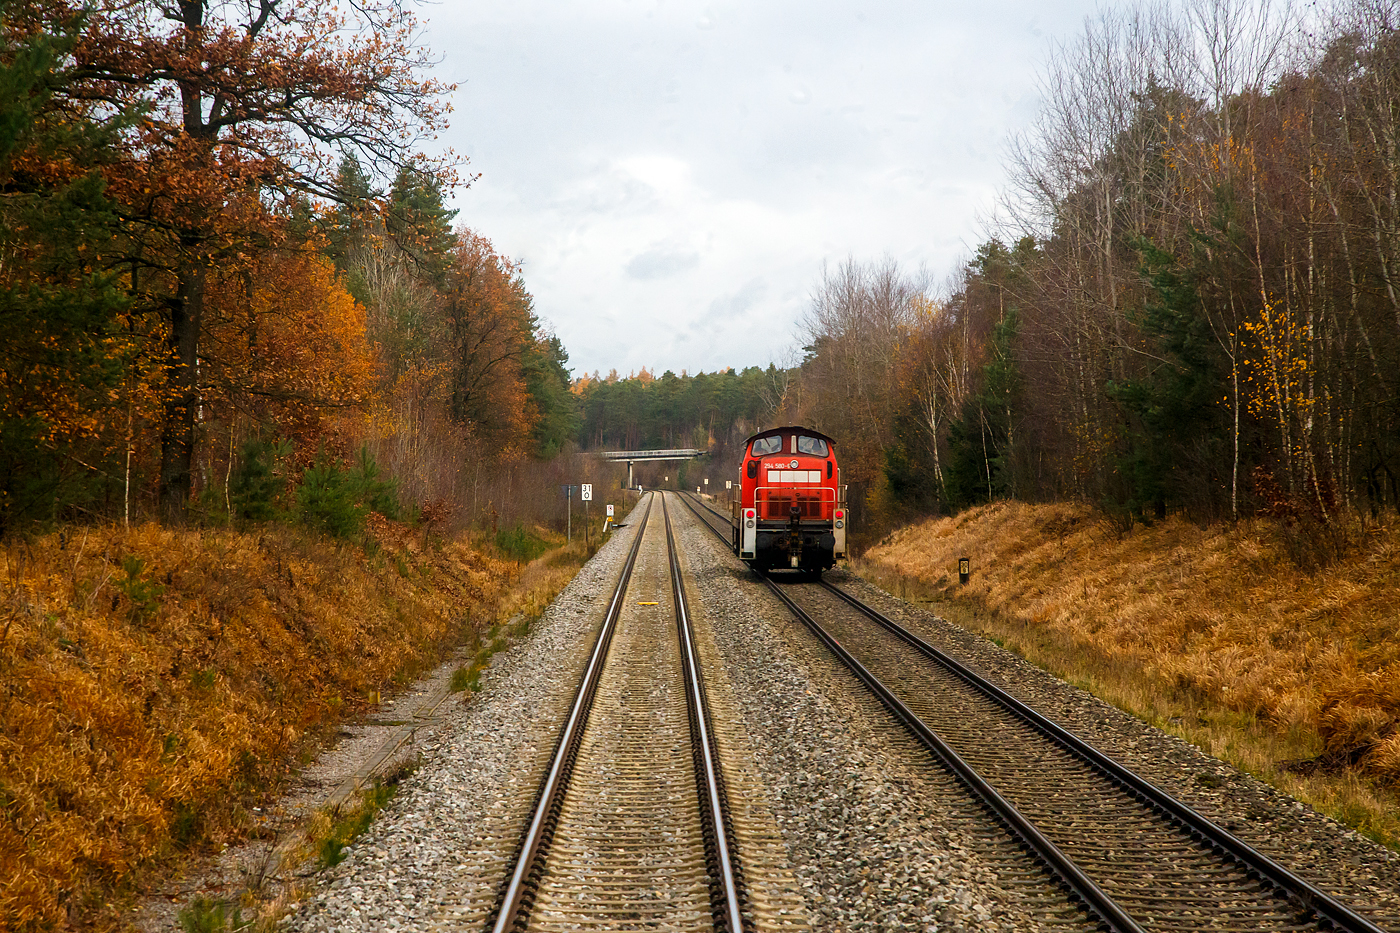 Die 294 580-6 (98 80 3294 580-6 D-DB), eine remotorisierte V 90 der DB Cargo AG fhrt am 24.11.2022 al LZ (Lokzug), bei Maxhtte (km 31) die Bahnstrecke Bahnstrecke Regensburg - Schwandorf  - Weiden (KBS 855) in Richtung Schwandorf. Foto aus dem letzten Wagen vom alex RE 25.

Die Bahnstrecke Regensburg–Weiden ist eine nicht elektrifizierte zweigleisige Hauptbahn in Bayern. Sie verbindet die oberpflzische Bezirkshauptstadt Regensburg ber Schwandorf mit Weiden in der Oberpfalz.
